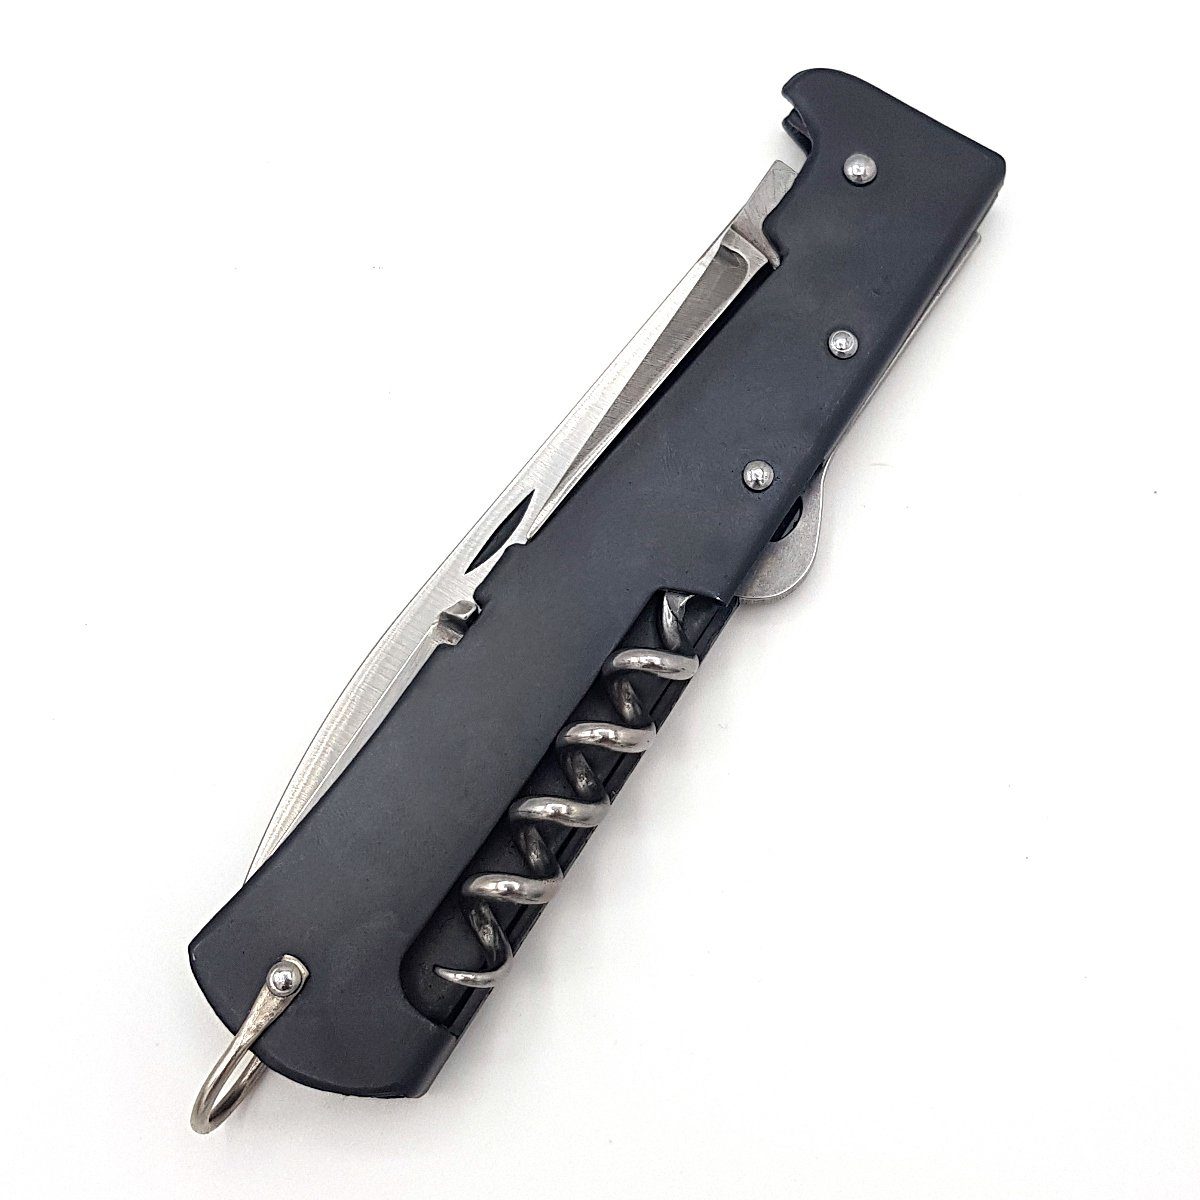 Otter Messer Taschenmesser groß brüniert, Stahl Carbonstahl, Multi Backlock Klinge Mercator-Messer